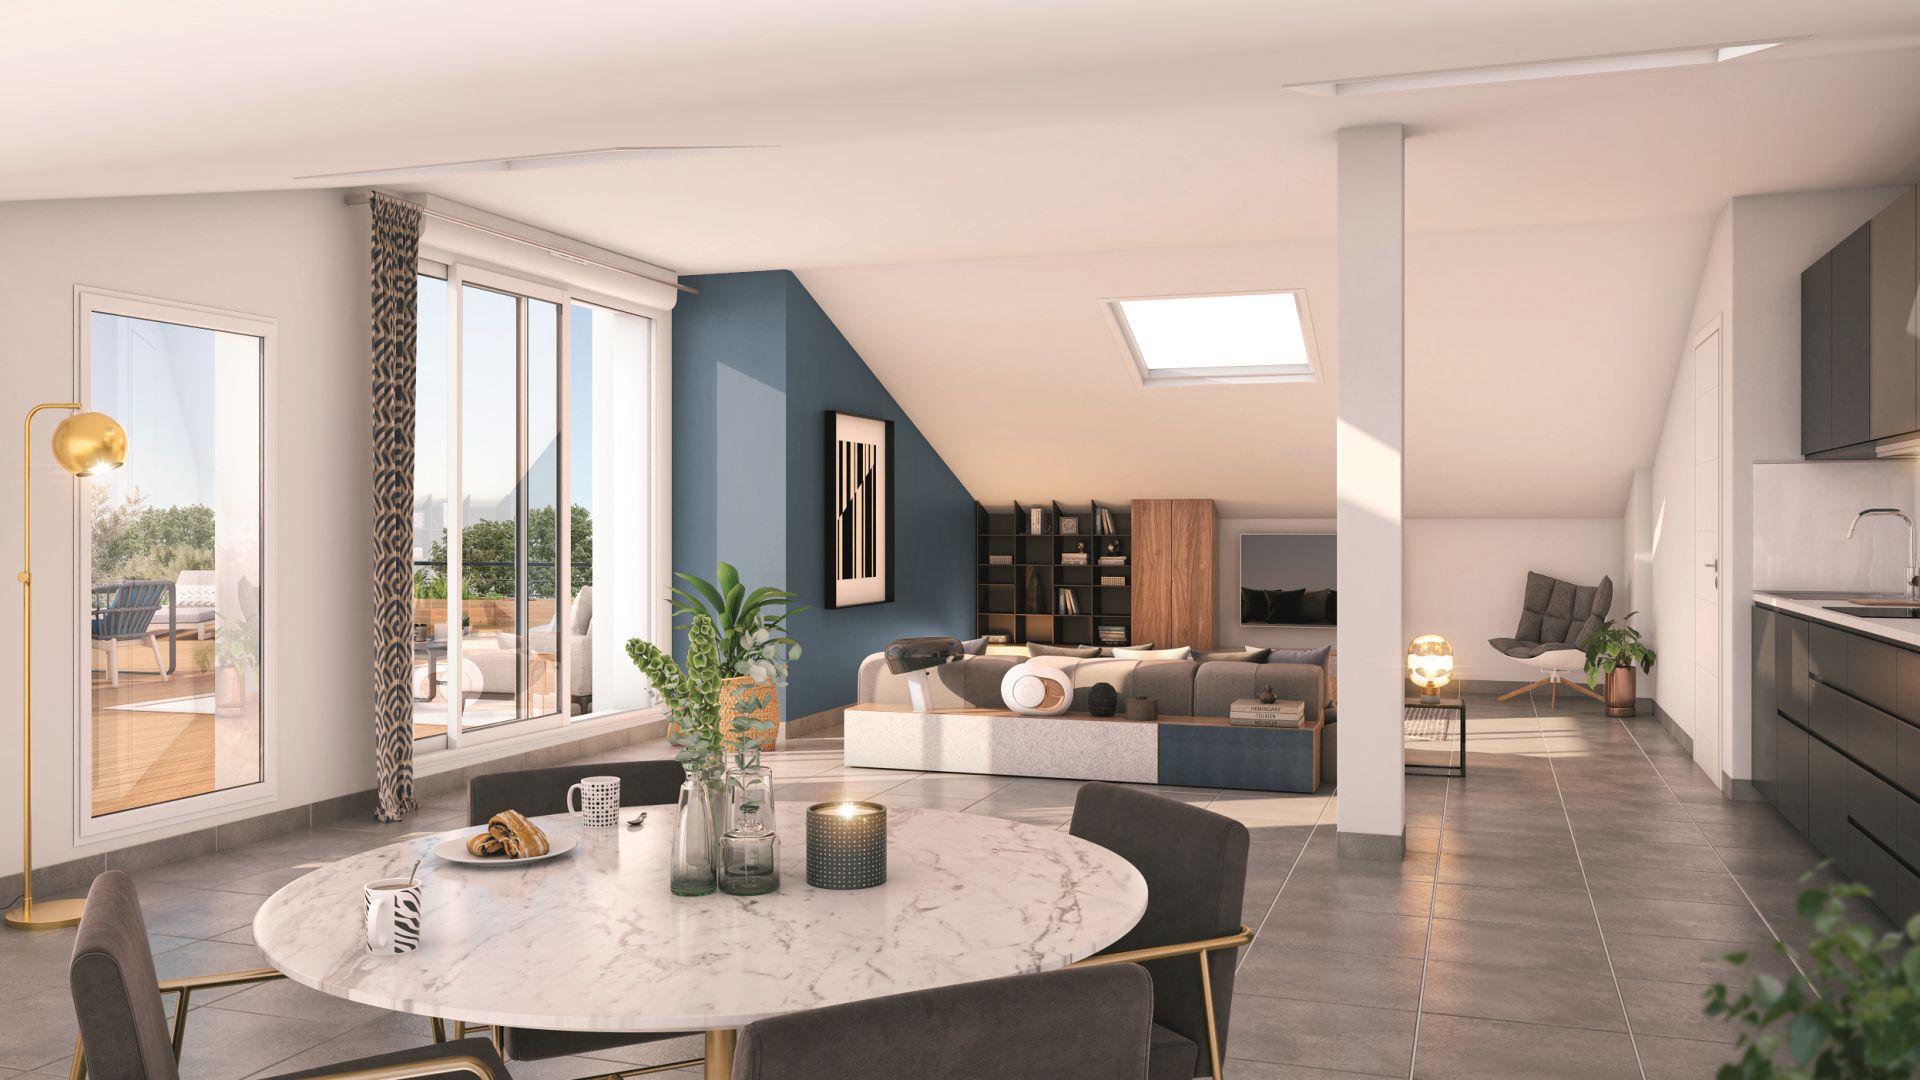 Greencity immobilier - achat appartements neufs du T1 au T5 - Résidence Le Luminance - 31650 Saint-Orens-de-Gameville  - vue intérieure